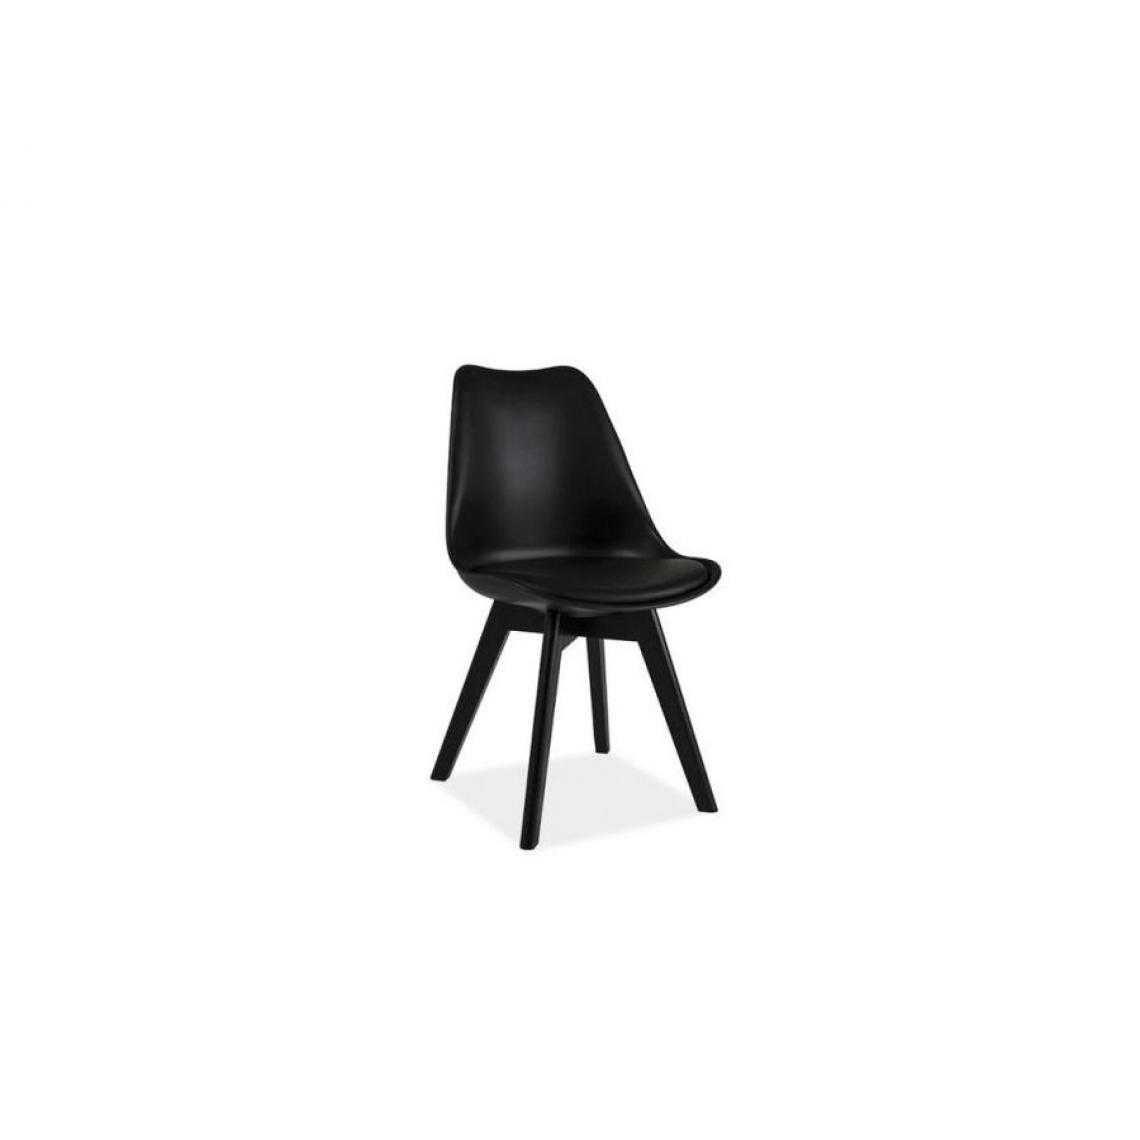 Hucoco - KRIK | Chaise style scandinave salle à manger salon bureau | 83x49x43 cm | PP + similicuir + bois | Chaise moderne - Noir - Chaises